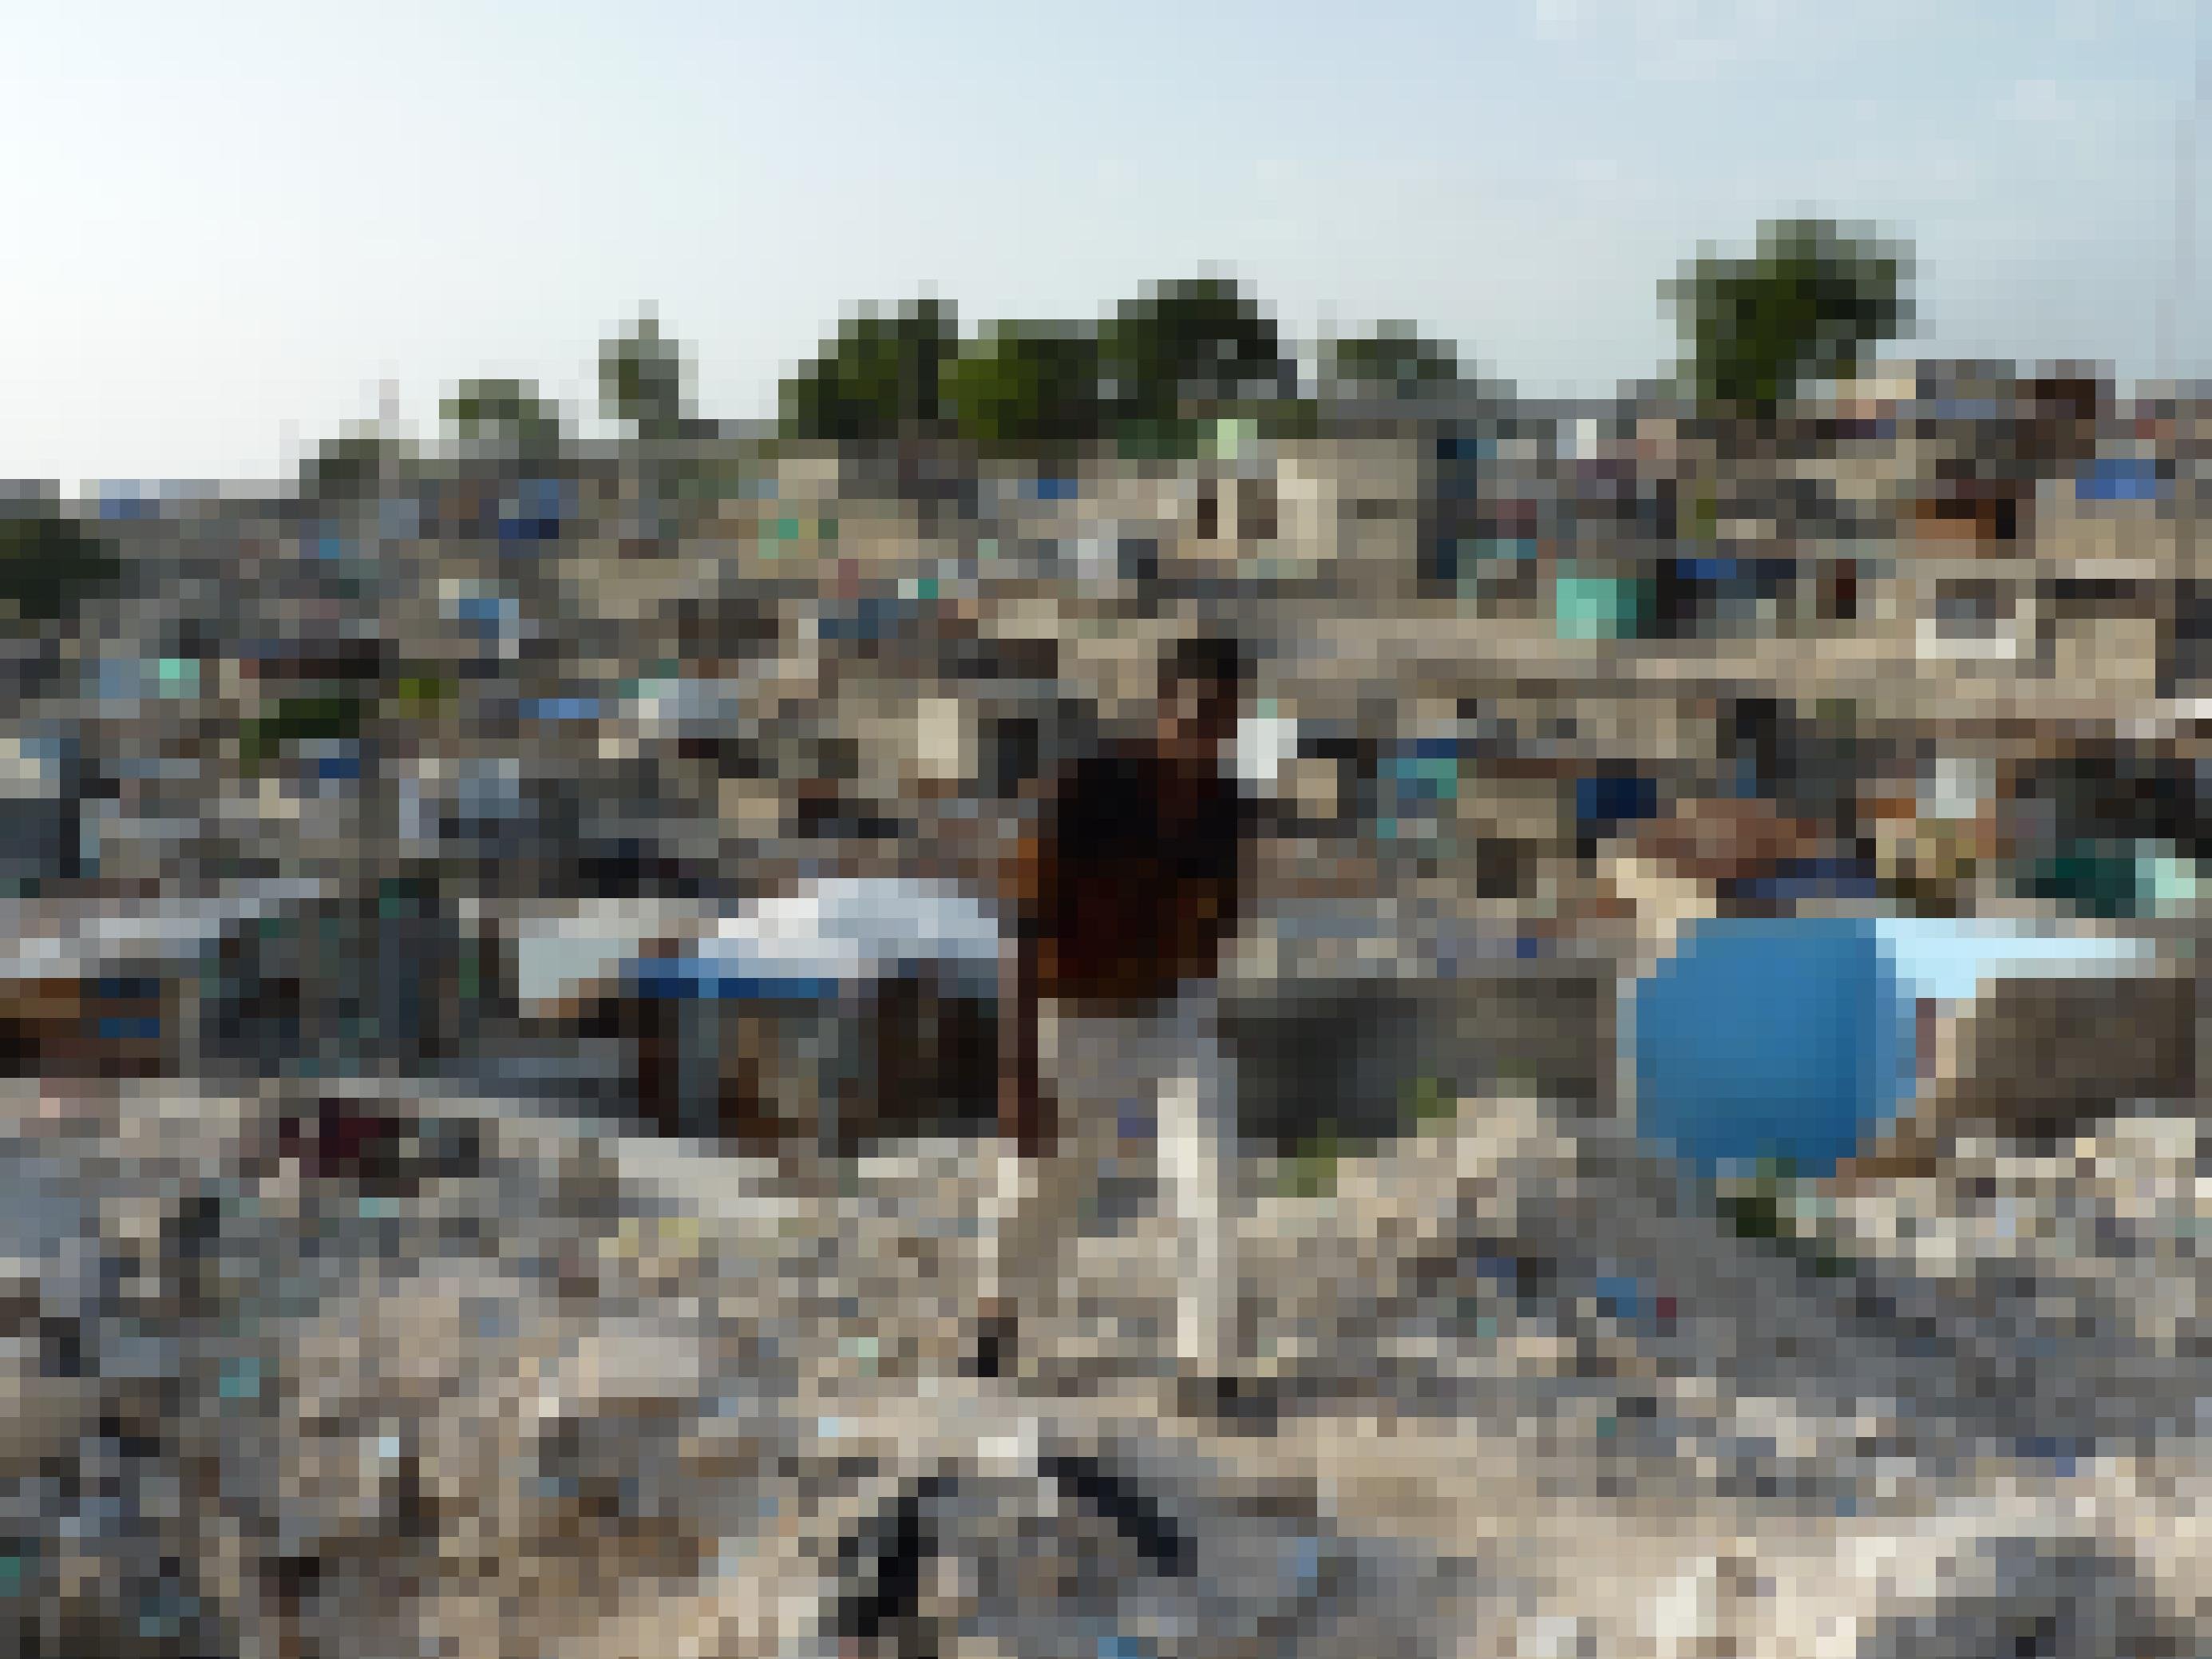 Ein hagerer Haitianer bahnt sich seinen Weg durch Trümmer, im Hintergrund zerstörte Häuser in Haitis Hauptstadt Port-au-Prince